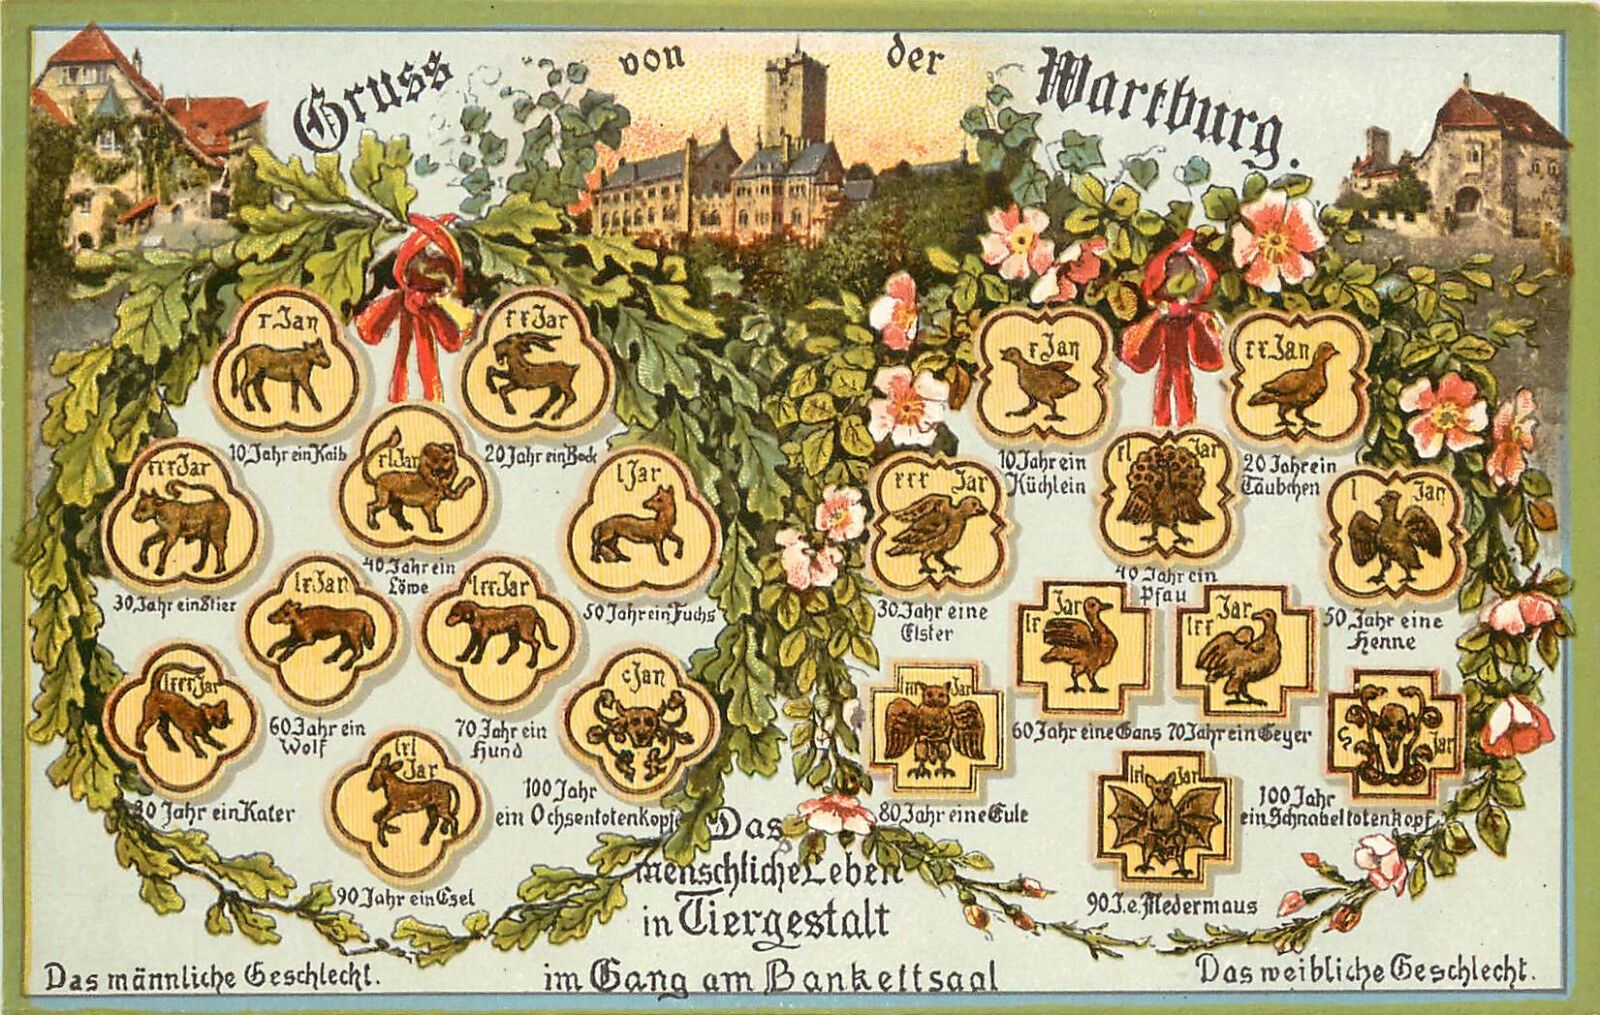 Gruss Von Der Wartburg Germany Postcard With All the Wild Animals 